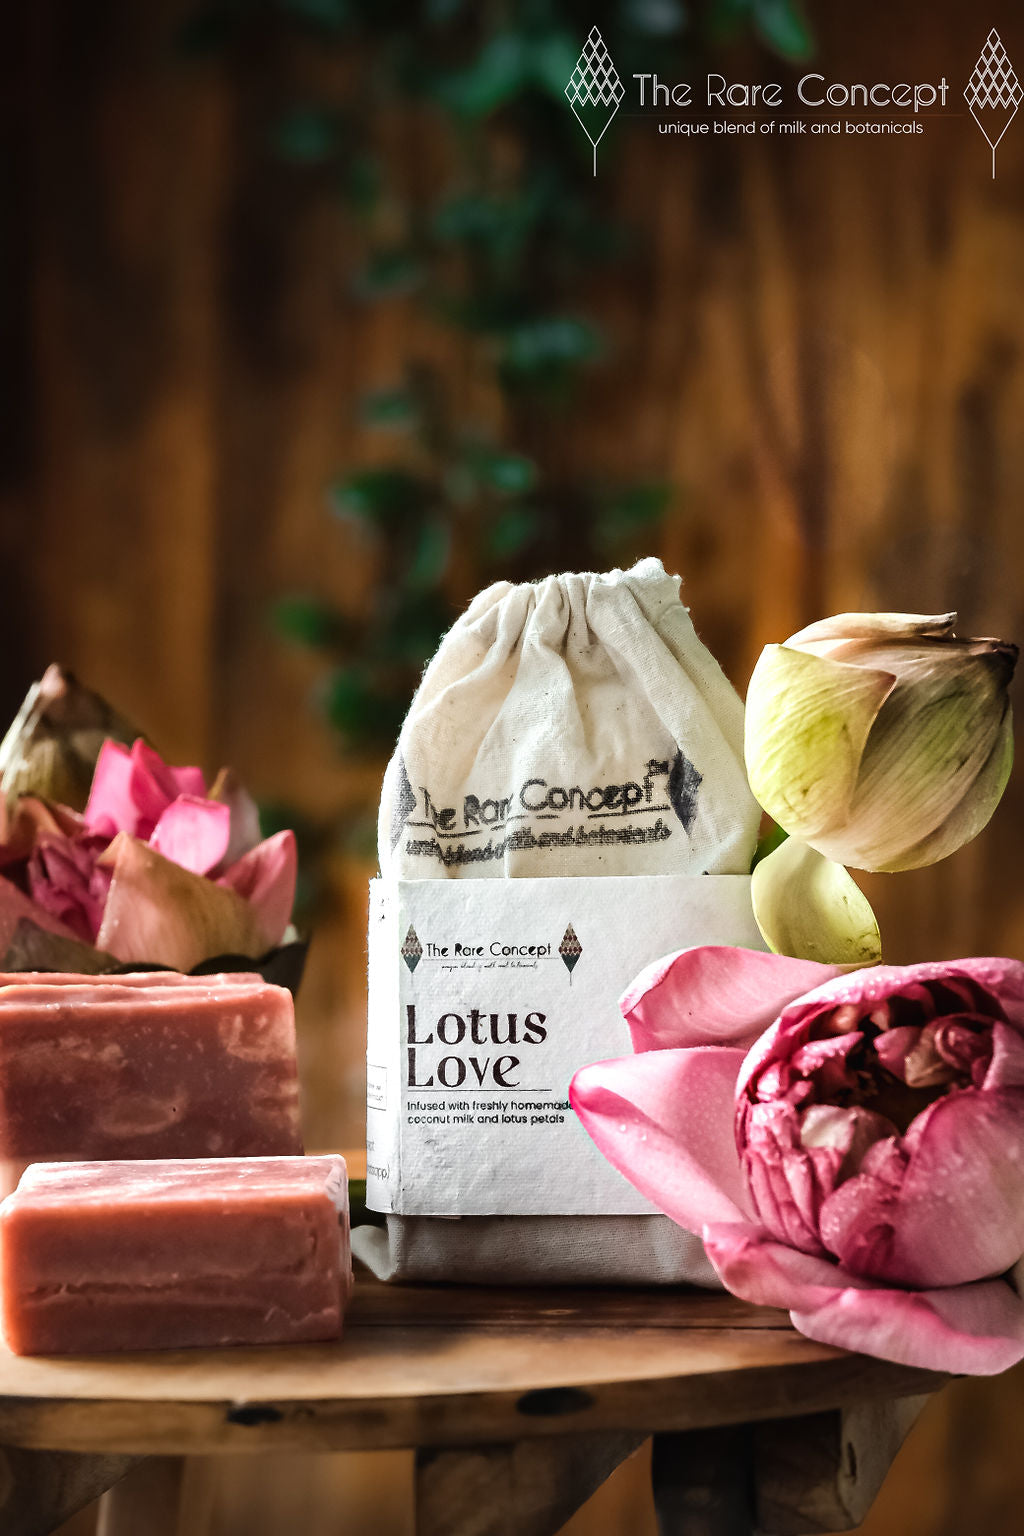 The Rare Concept Lotus Love (Coconut milk & Lotus Flower)